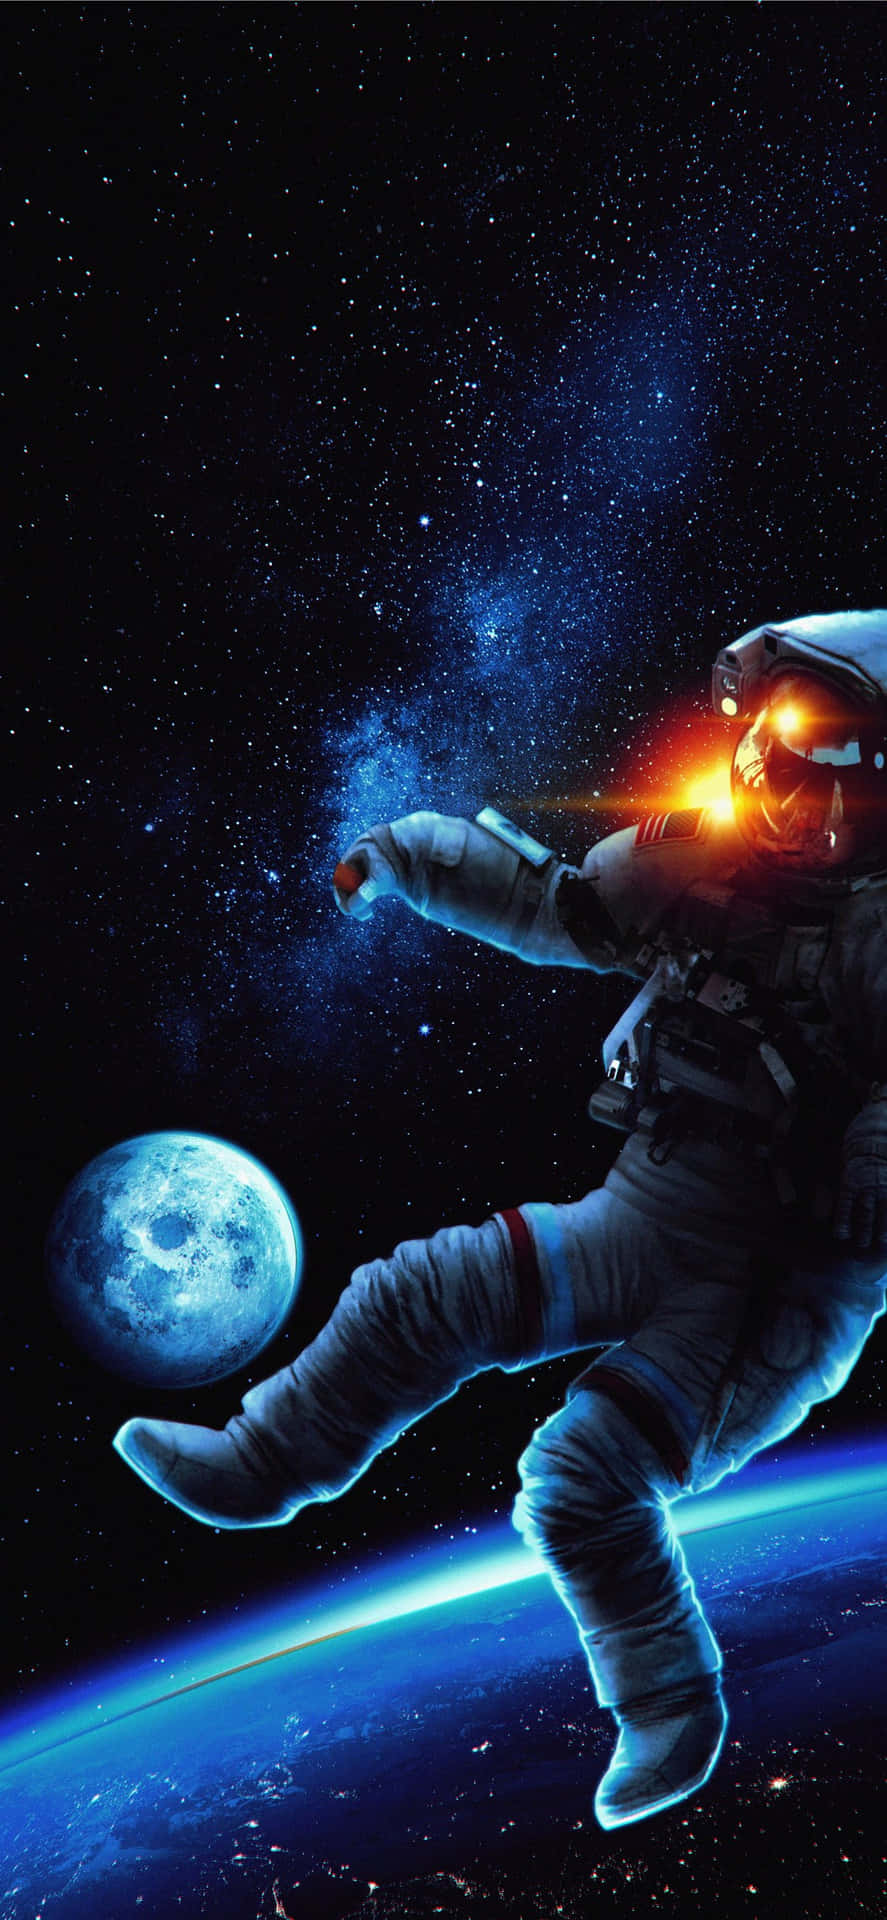 En astronaut viser deres mod, mod og ambition i rommet. Wallpaper